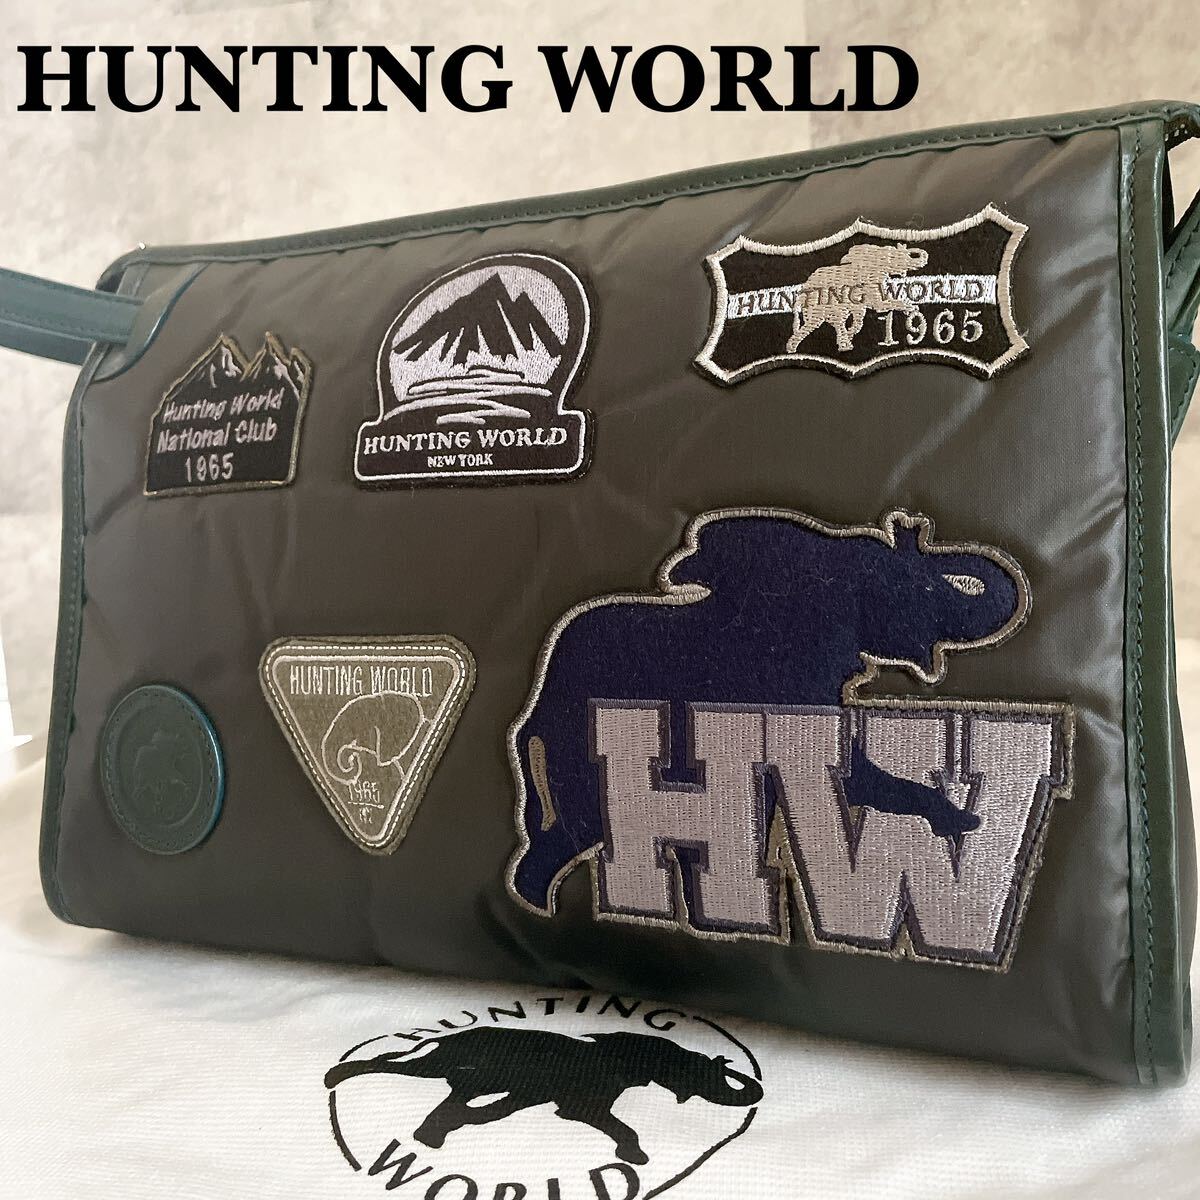  не использовался класс * HUNTING WORLD Hunting World мужской палочки .- кожа ручная сумочка сумка клатч нашивка чёрный зеленый упаковочный пакет есть 